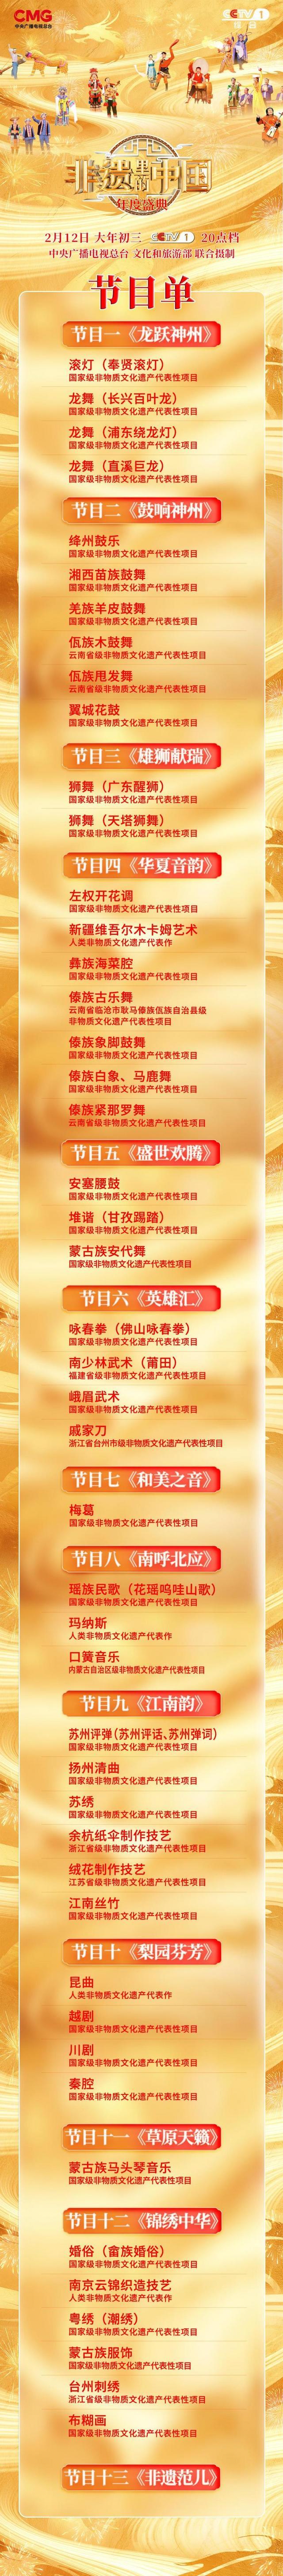 《非遗里的中国》新春年度盛典今晚开播